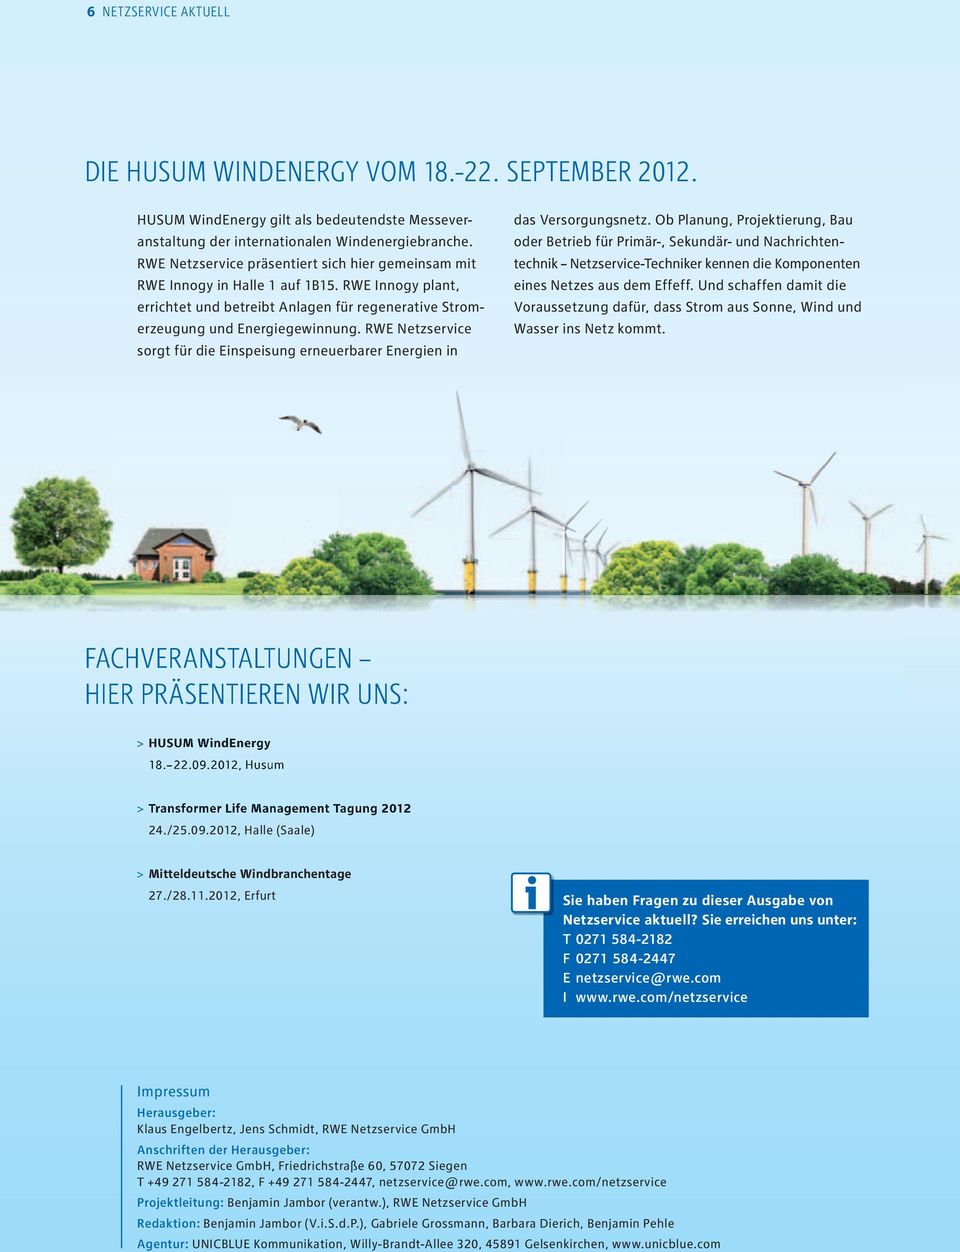 RWE Netzservice sorgt für die Einspeisung erneuerbarer Energien in das Versorgungs netz.